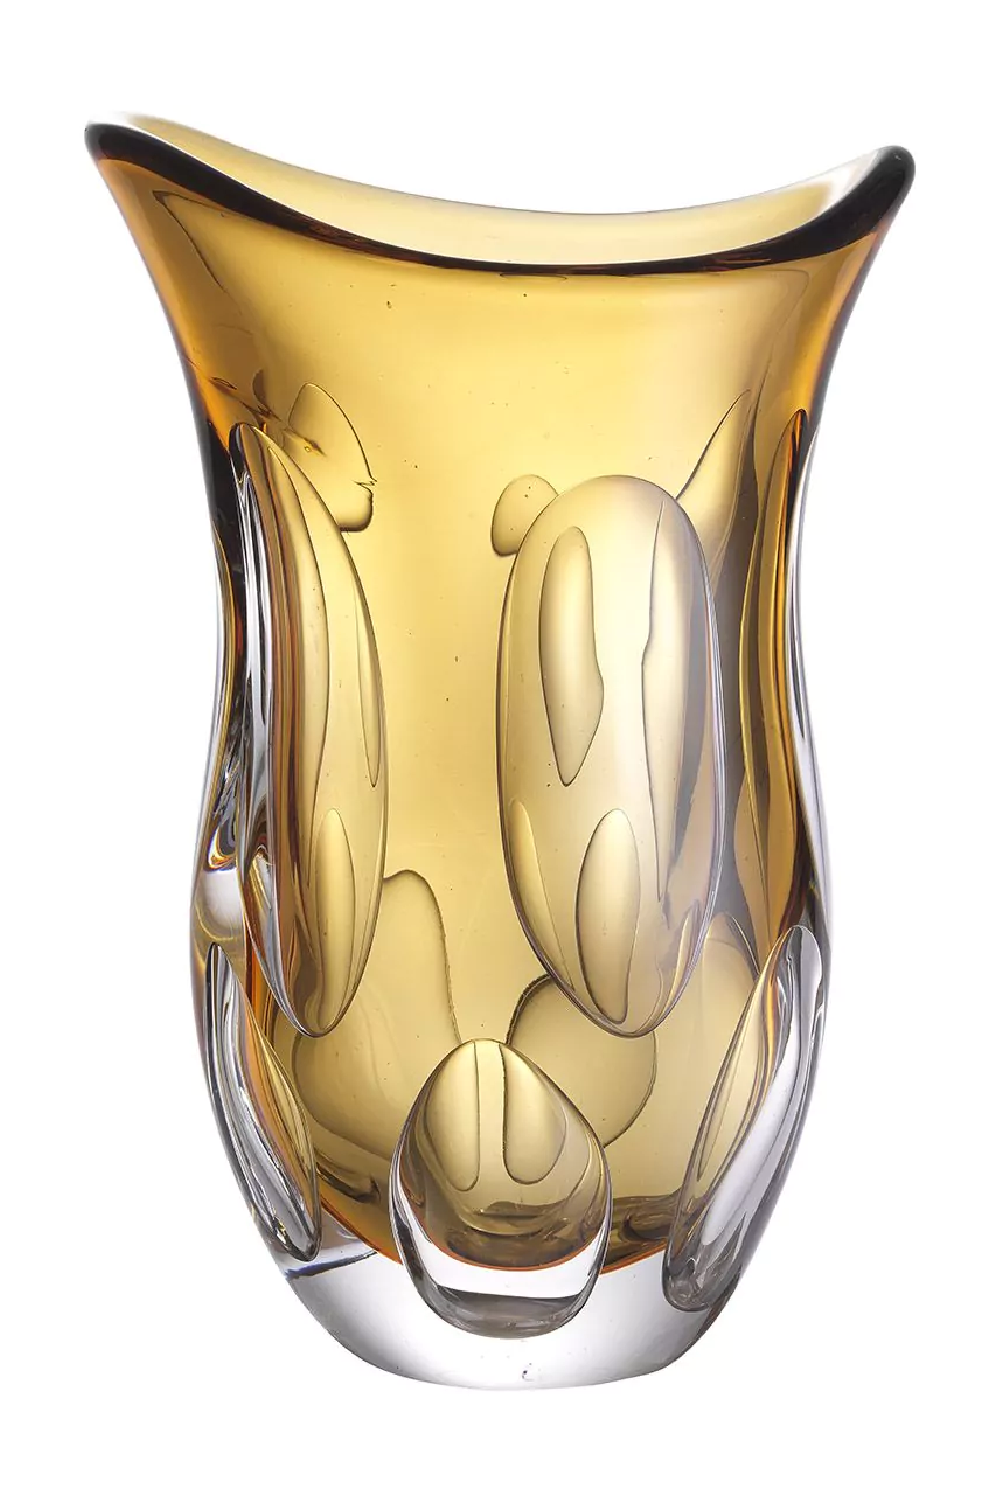 Orange Handblown Glass Vase | Eichholtz Matteo S | Oroa.com